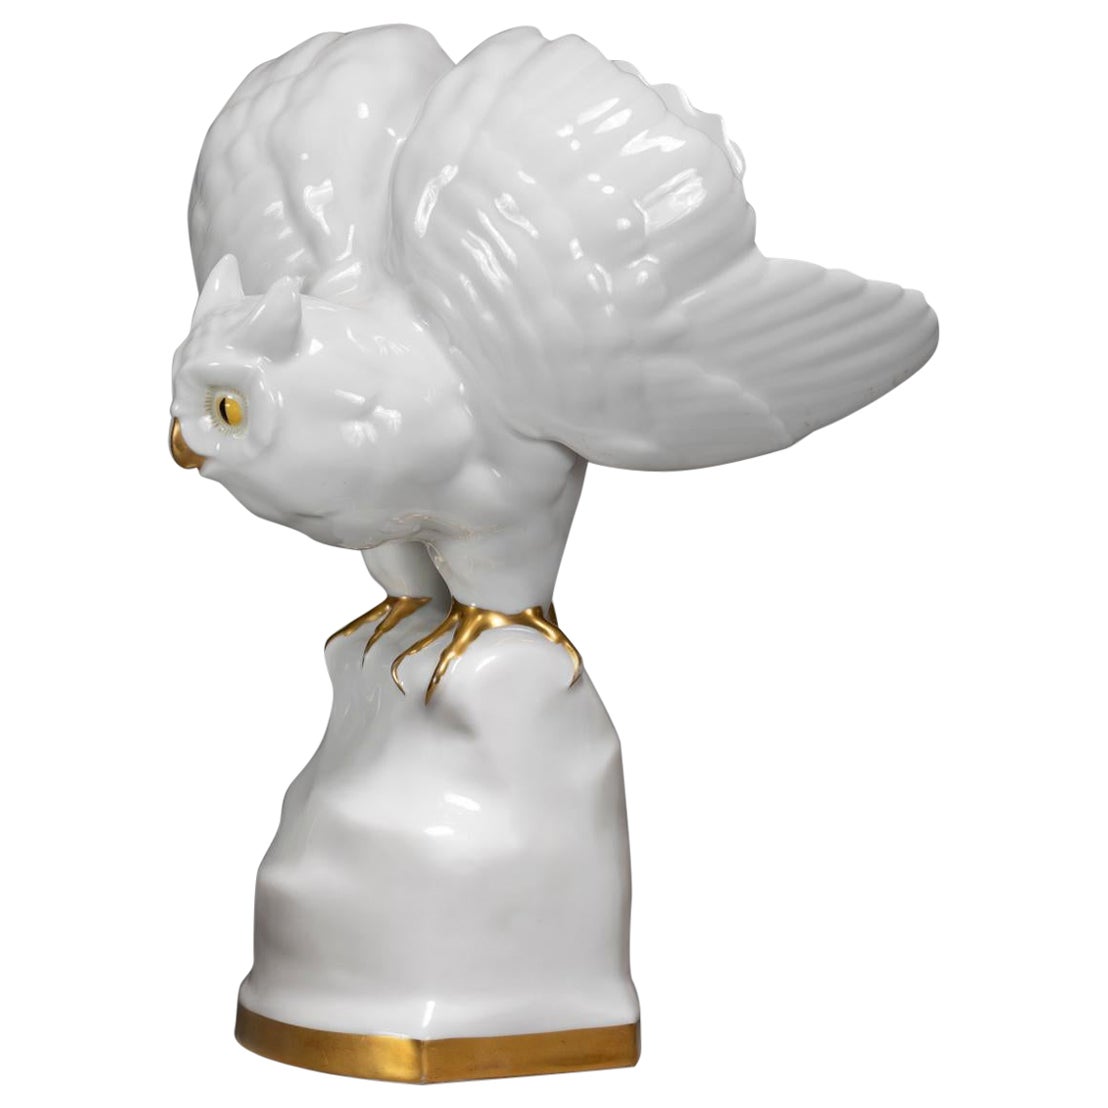 Heinrich & Co. Porcelain  Figurine "EAGLE OWL"   For Sale